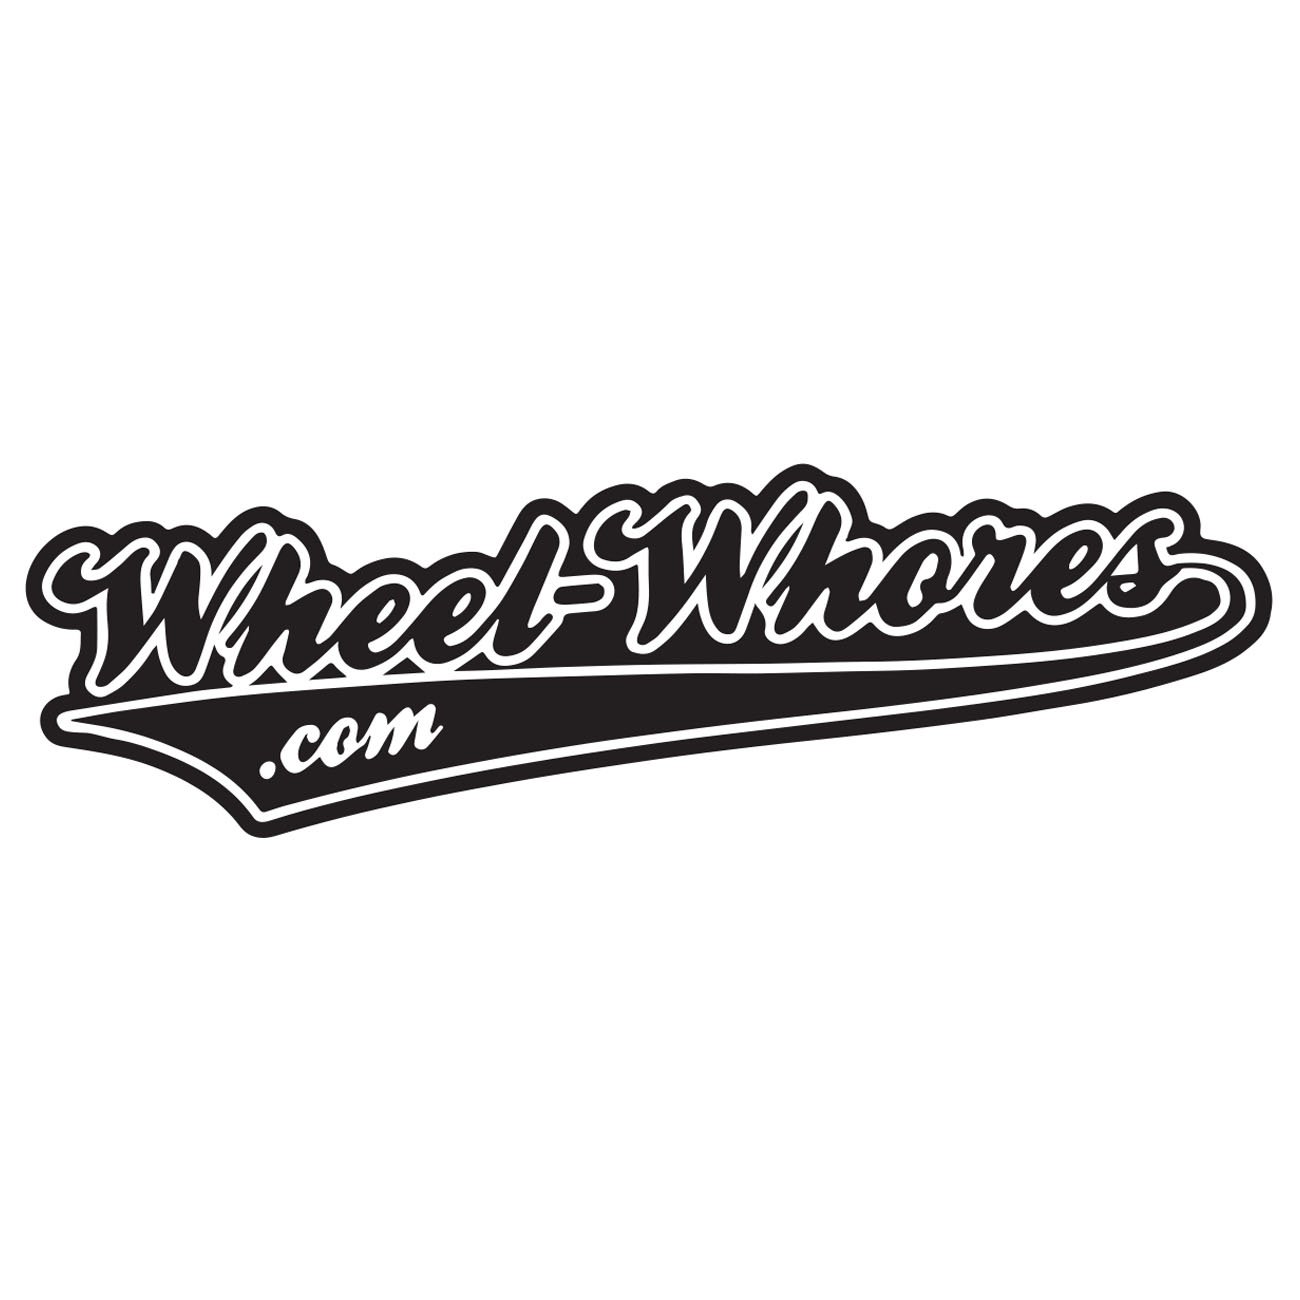 Wheelwhores.com 2